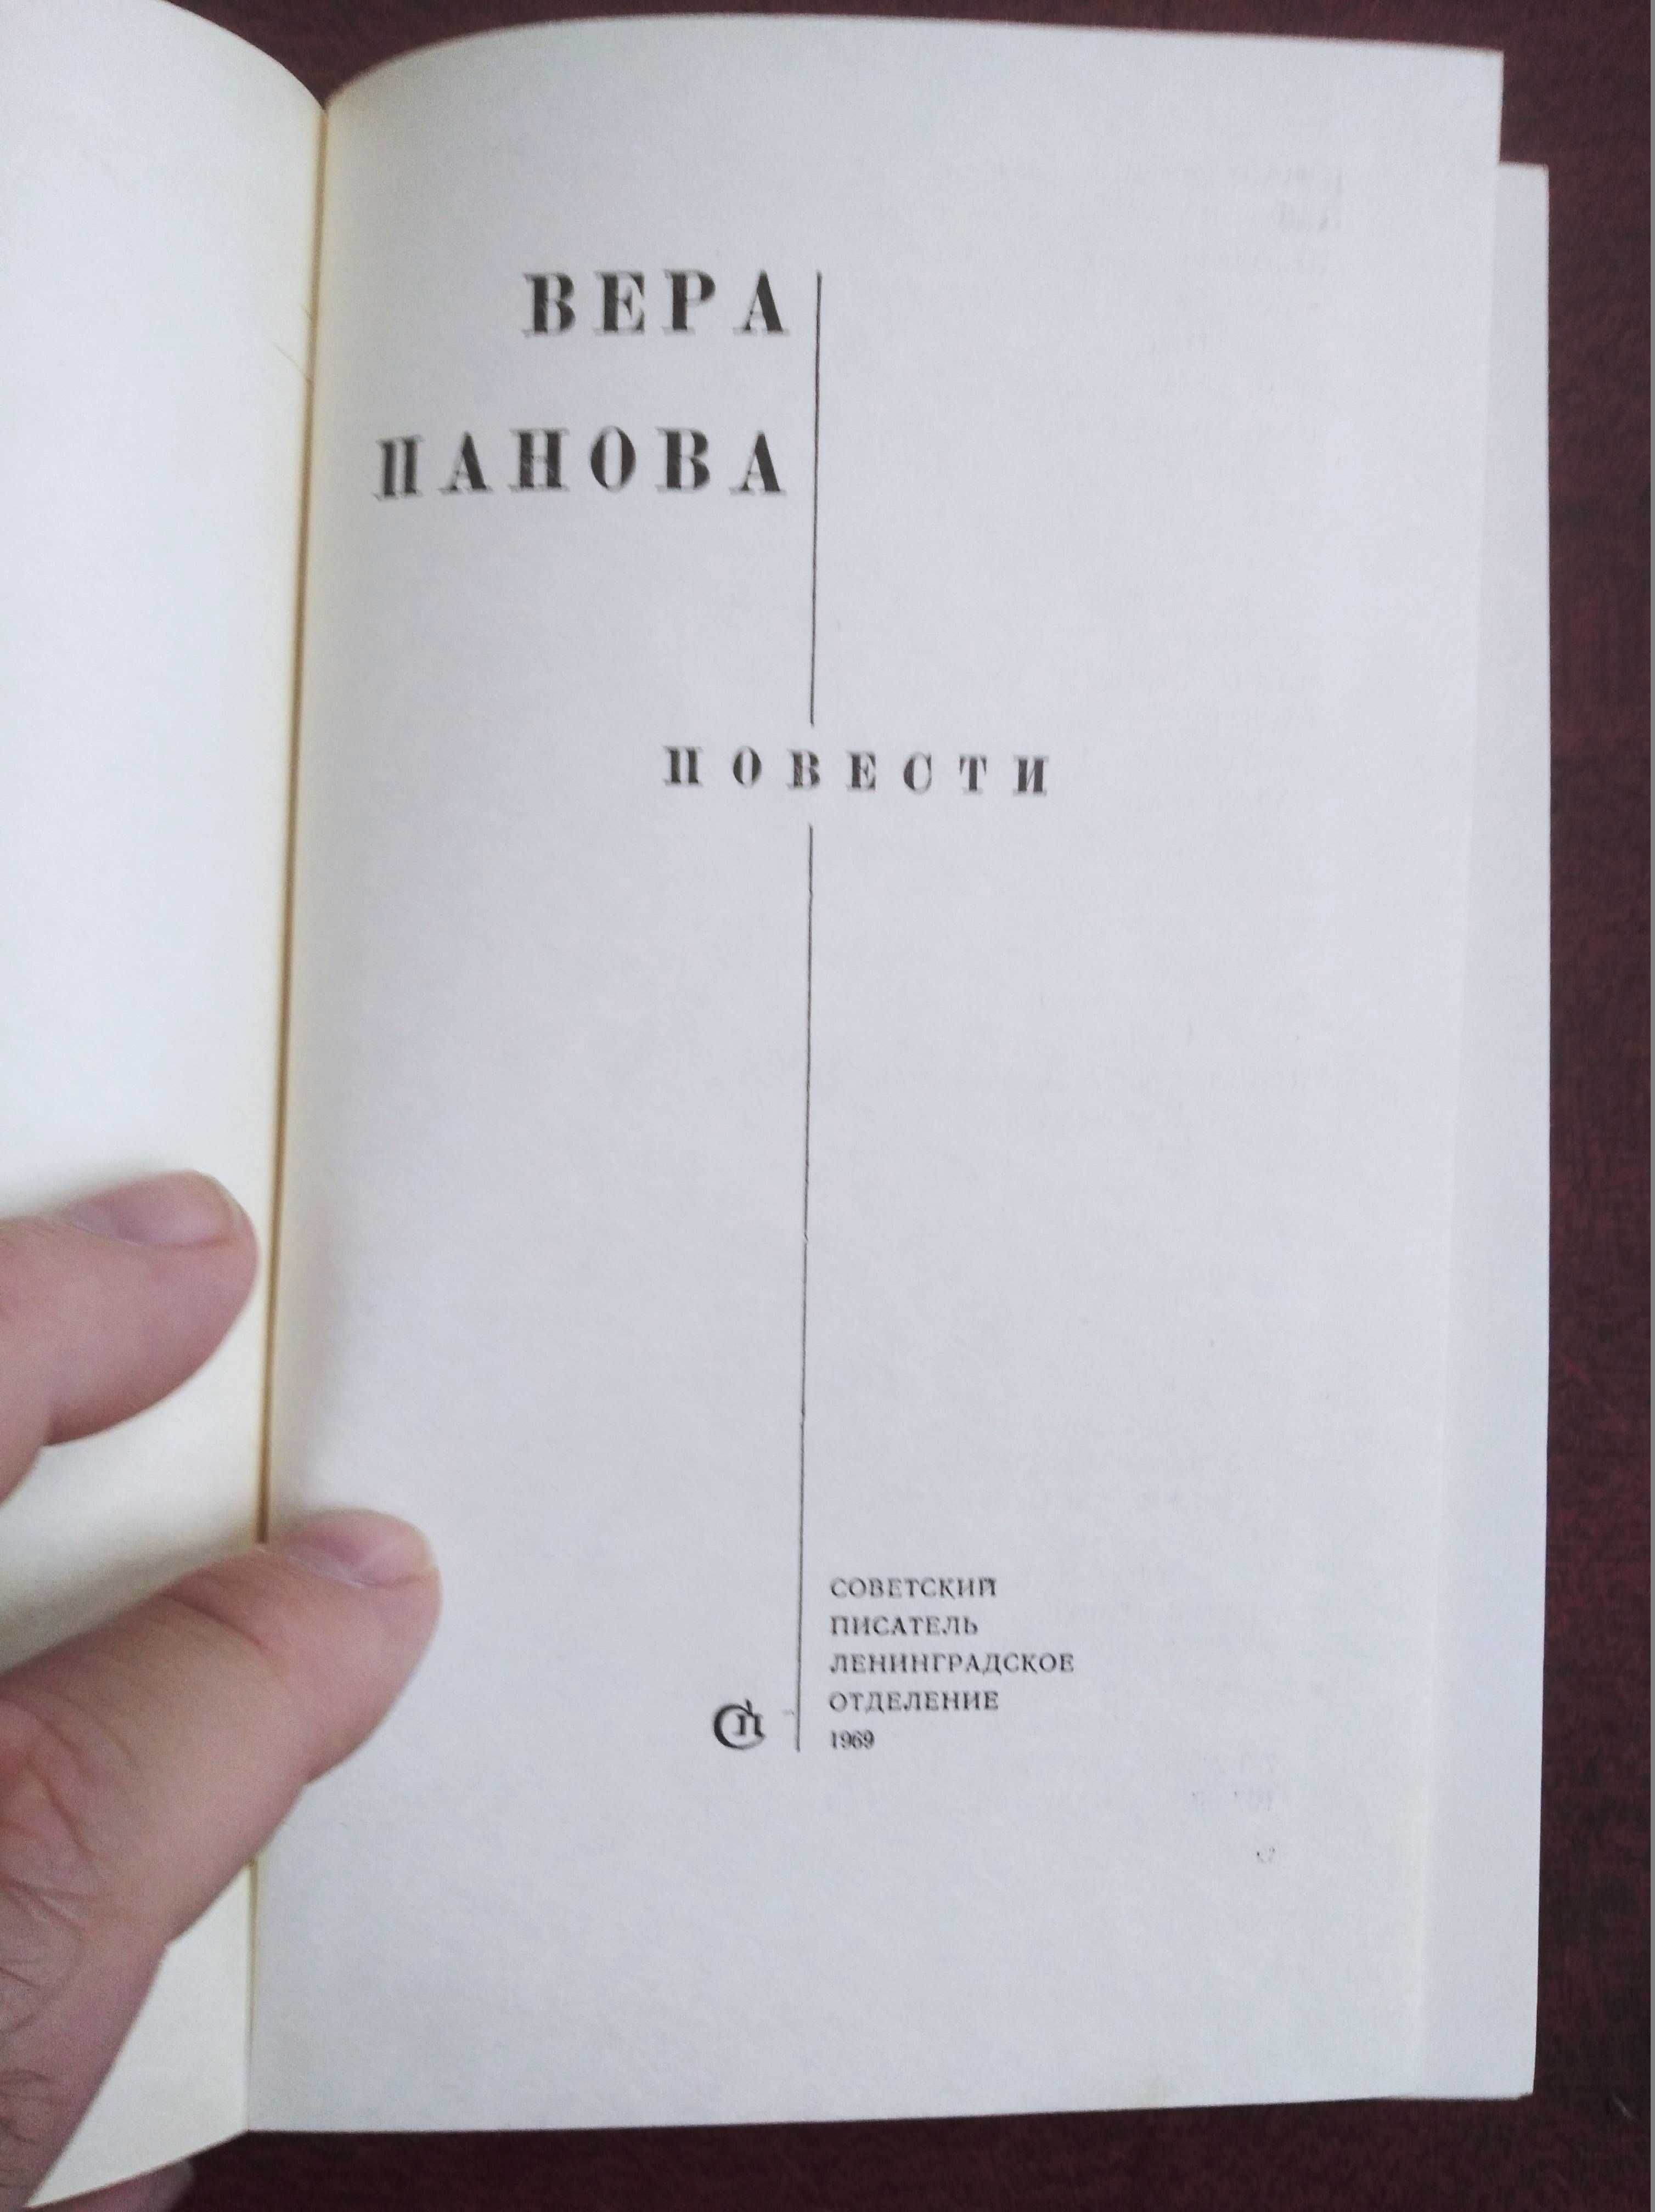 Продам книги Веры Пановой